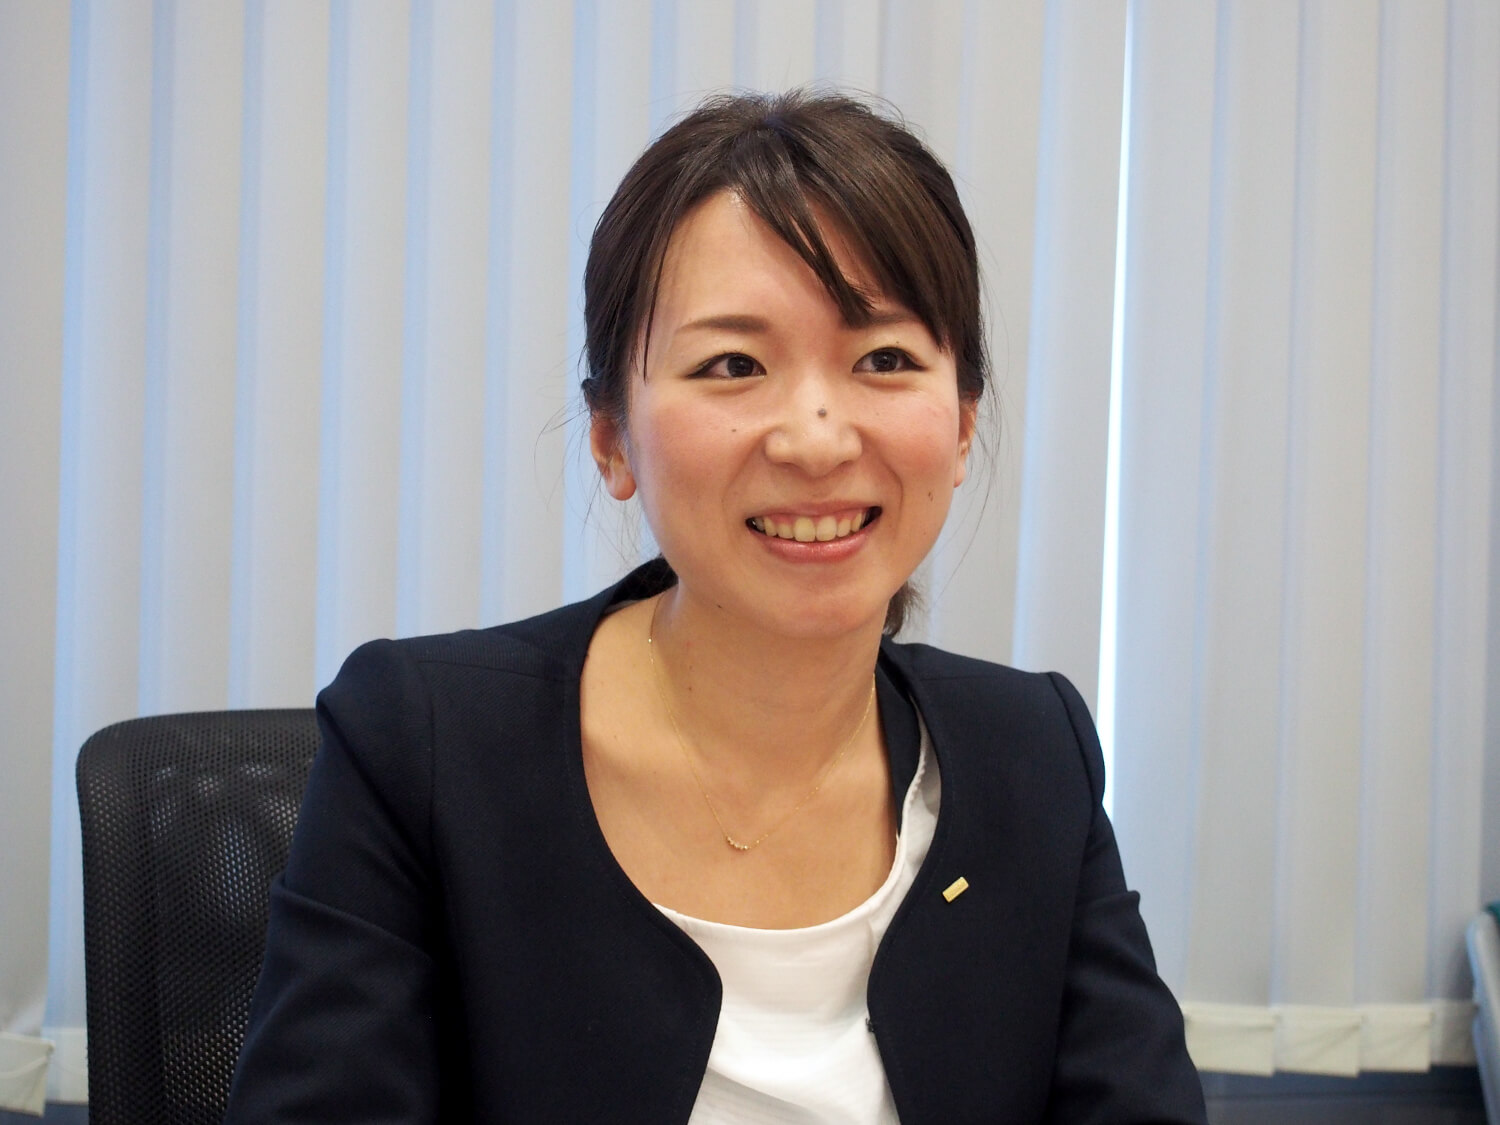 お話を伺った管理部人事課・小野京子さん。2013年に入社。全国の求人情報の管理などを担当したのち、管理部人事課で新卒採用、中途採用に携わる。研修も担当している。